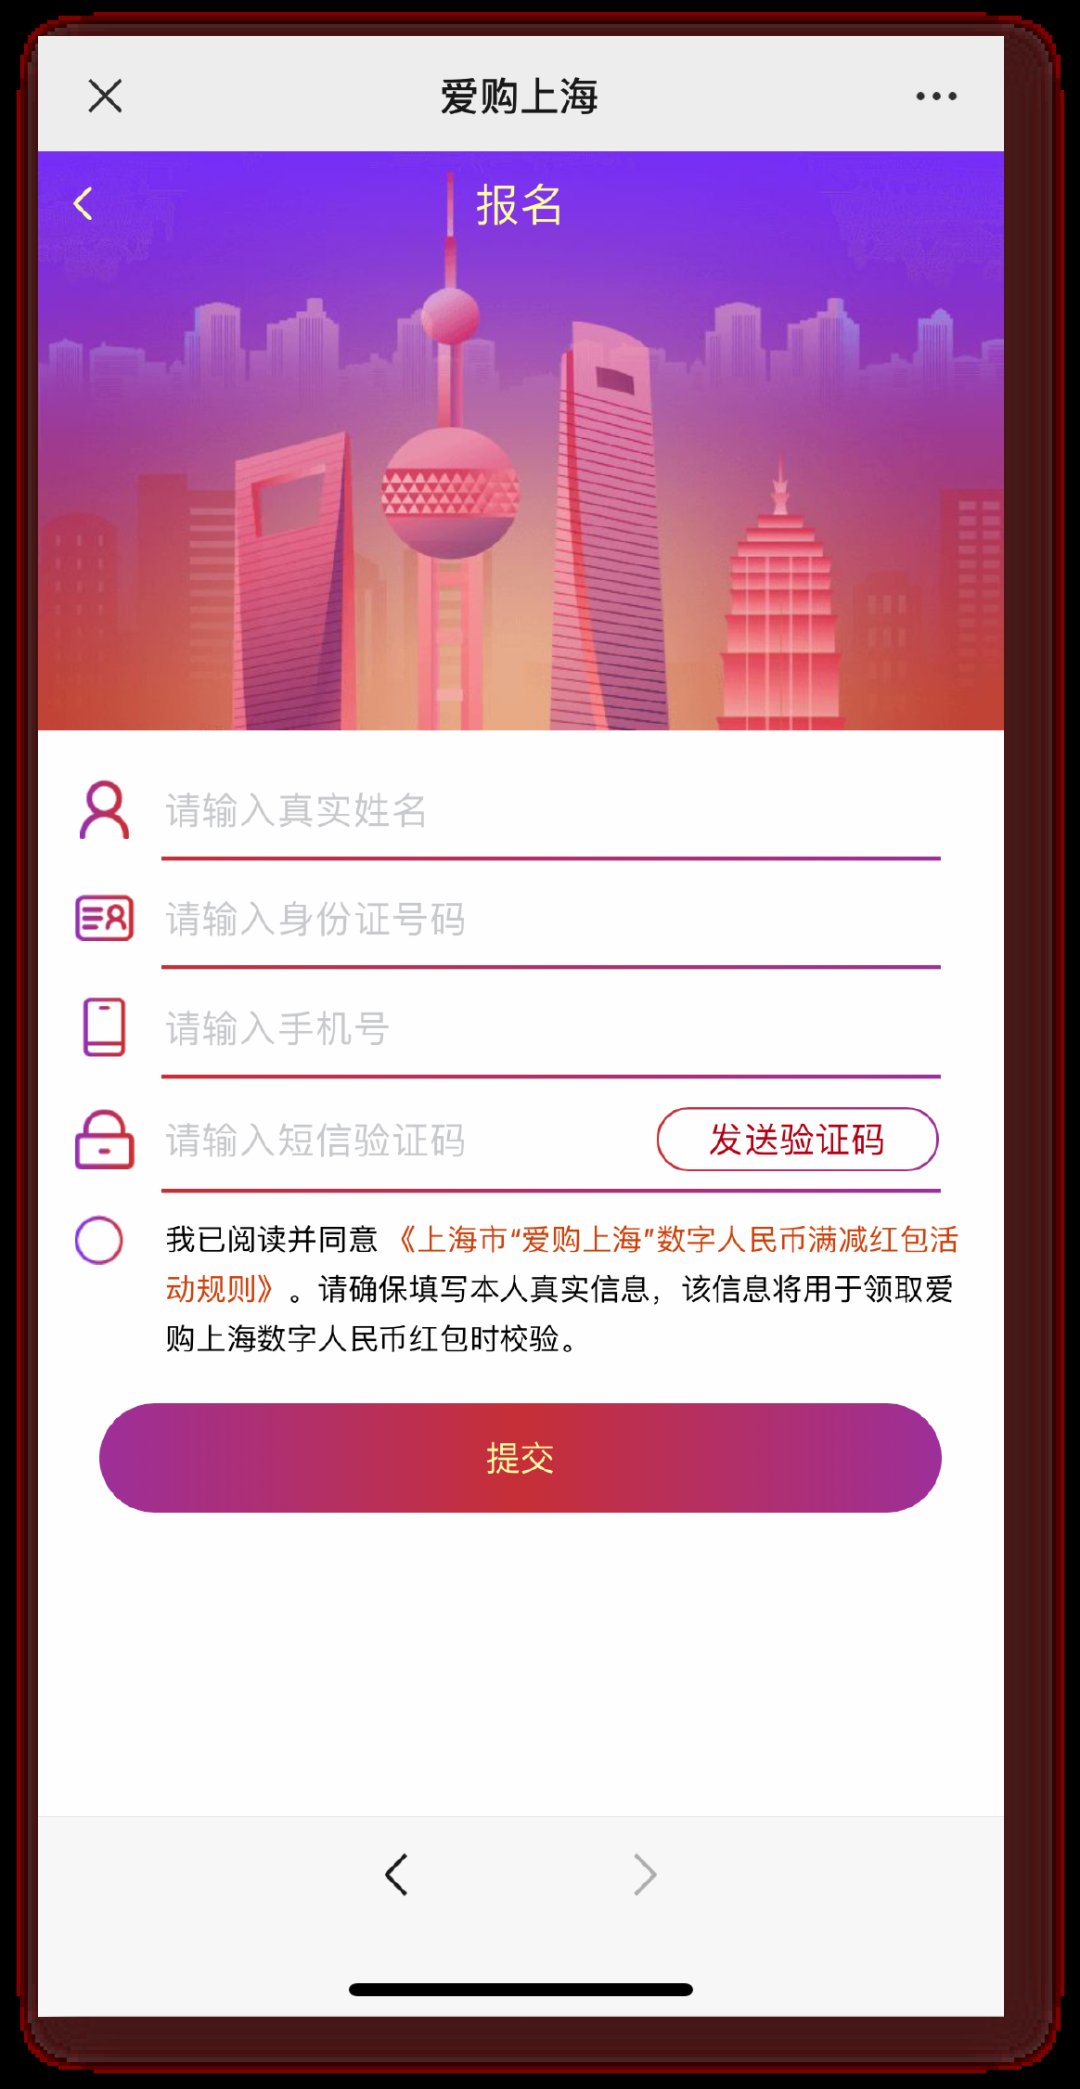 上海RMB满减红包如何获得 满108减58数字RMB红包获取方法